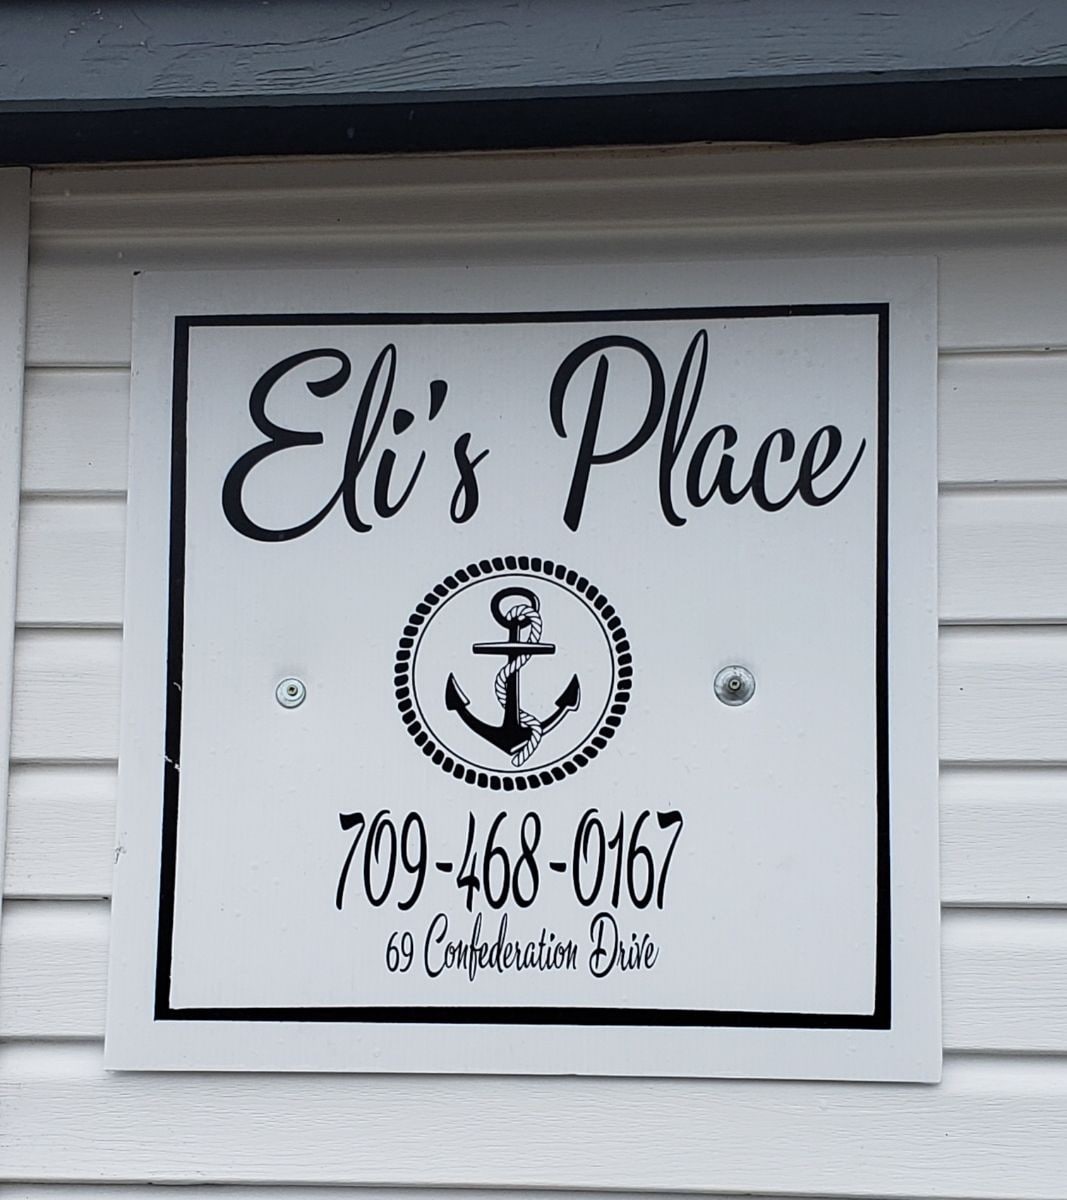 Eli's Place /located in historic Bonavista NL